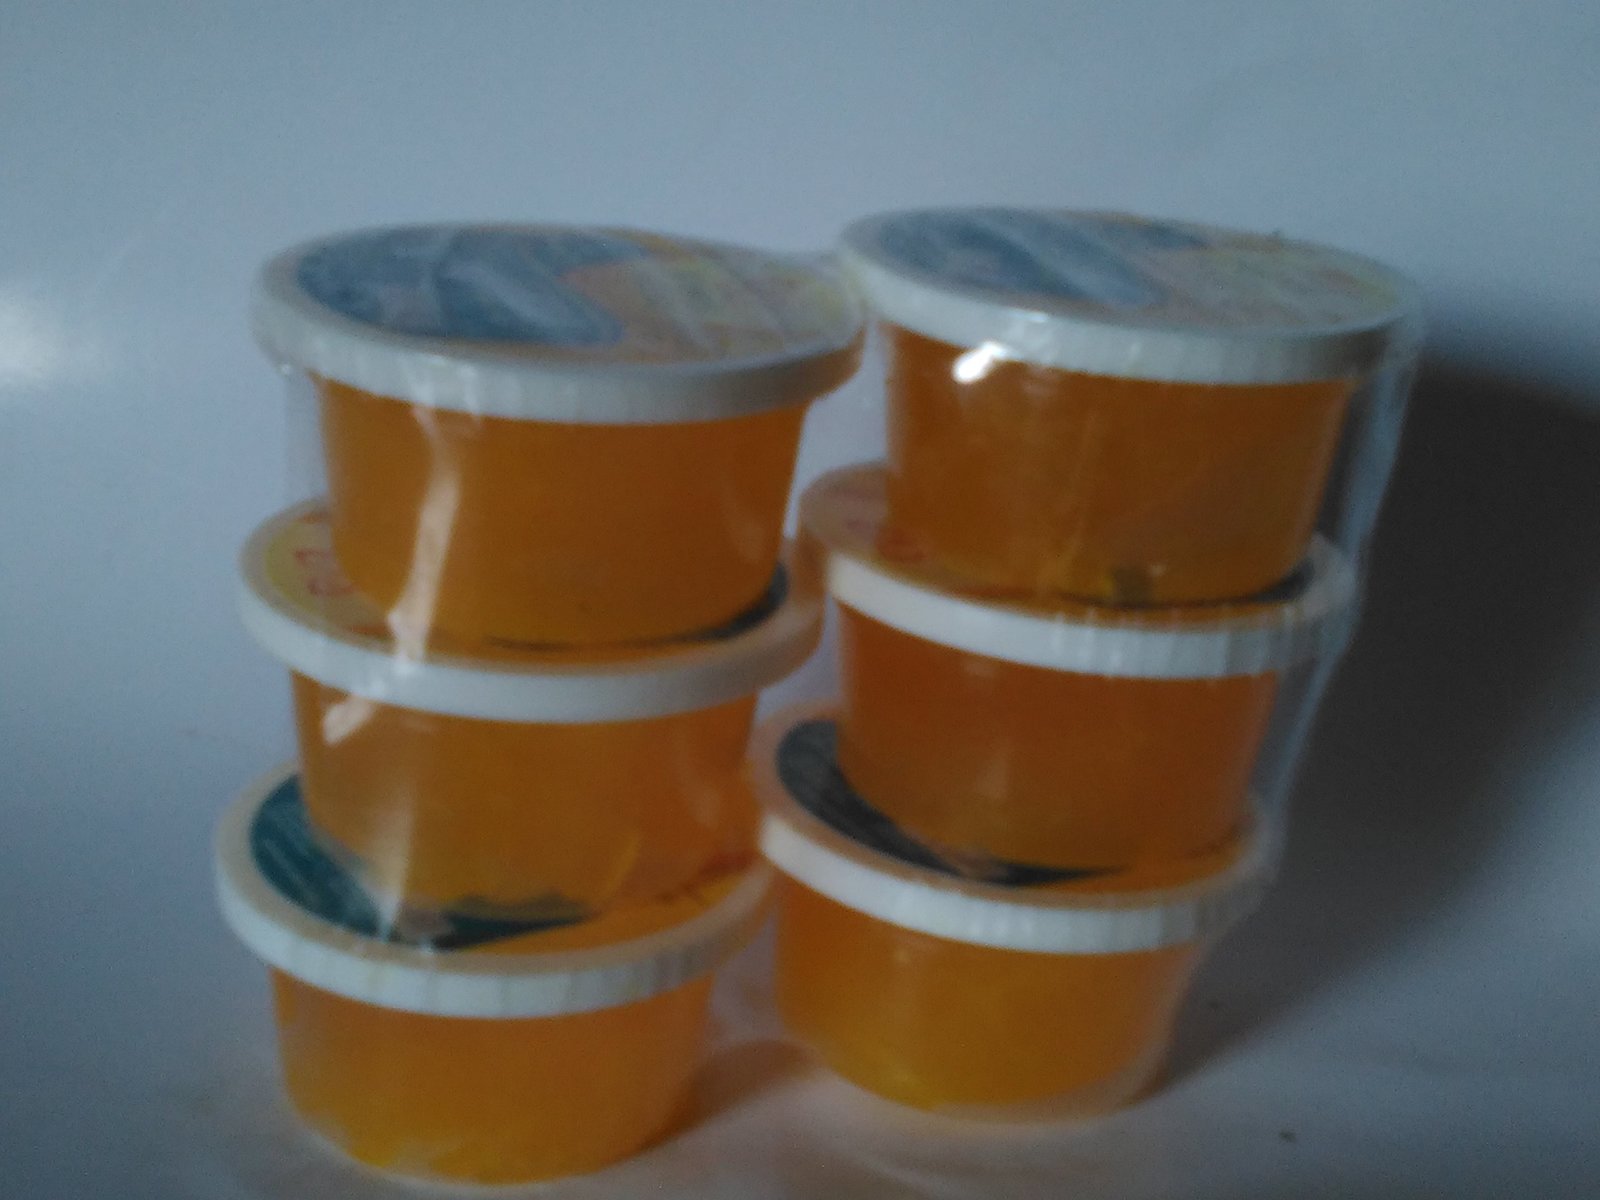 Primary image for Koepoe-koepoe Baking Mix TBM Emulsifiers (Ovalett/Ovalette), 35 Gram (Pack of 6)